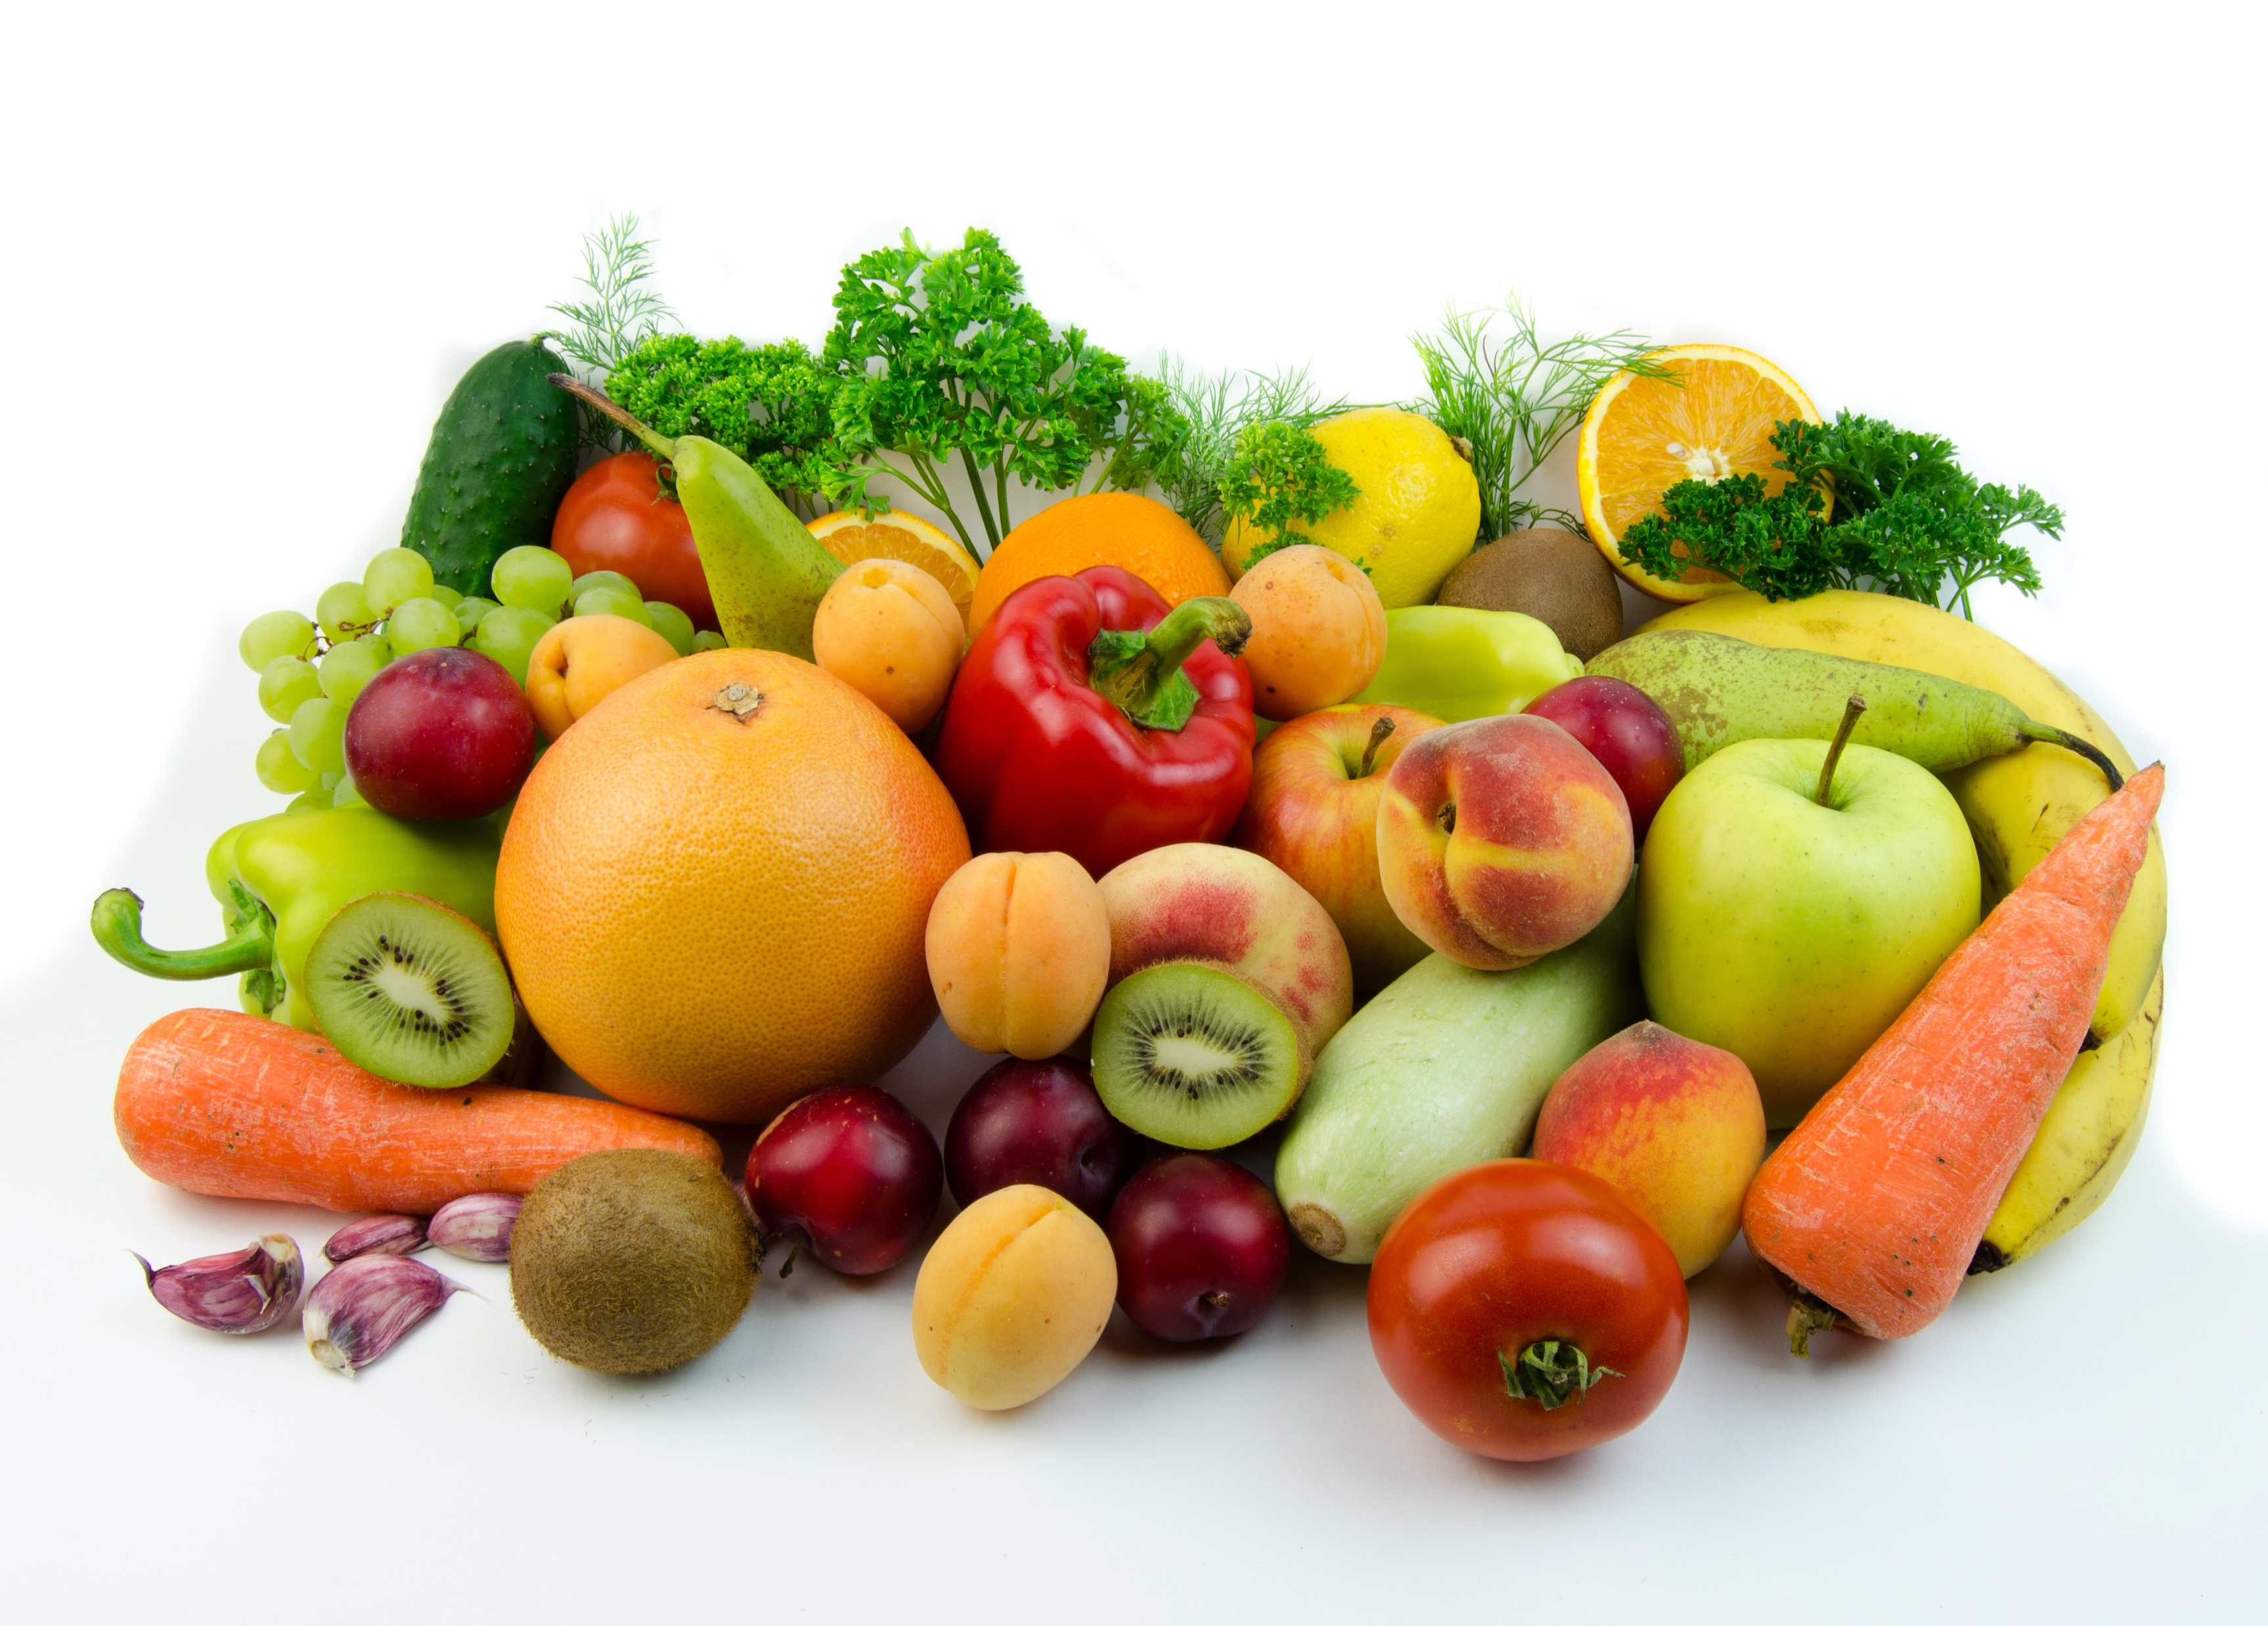 Плодовые товары. Овощи и фрукты. Фрукт. Свежие овощи и фрукты. Arerns b jdjob.